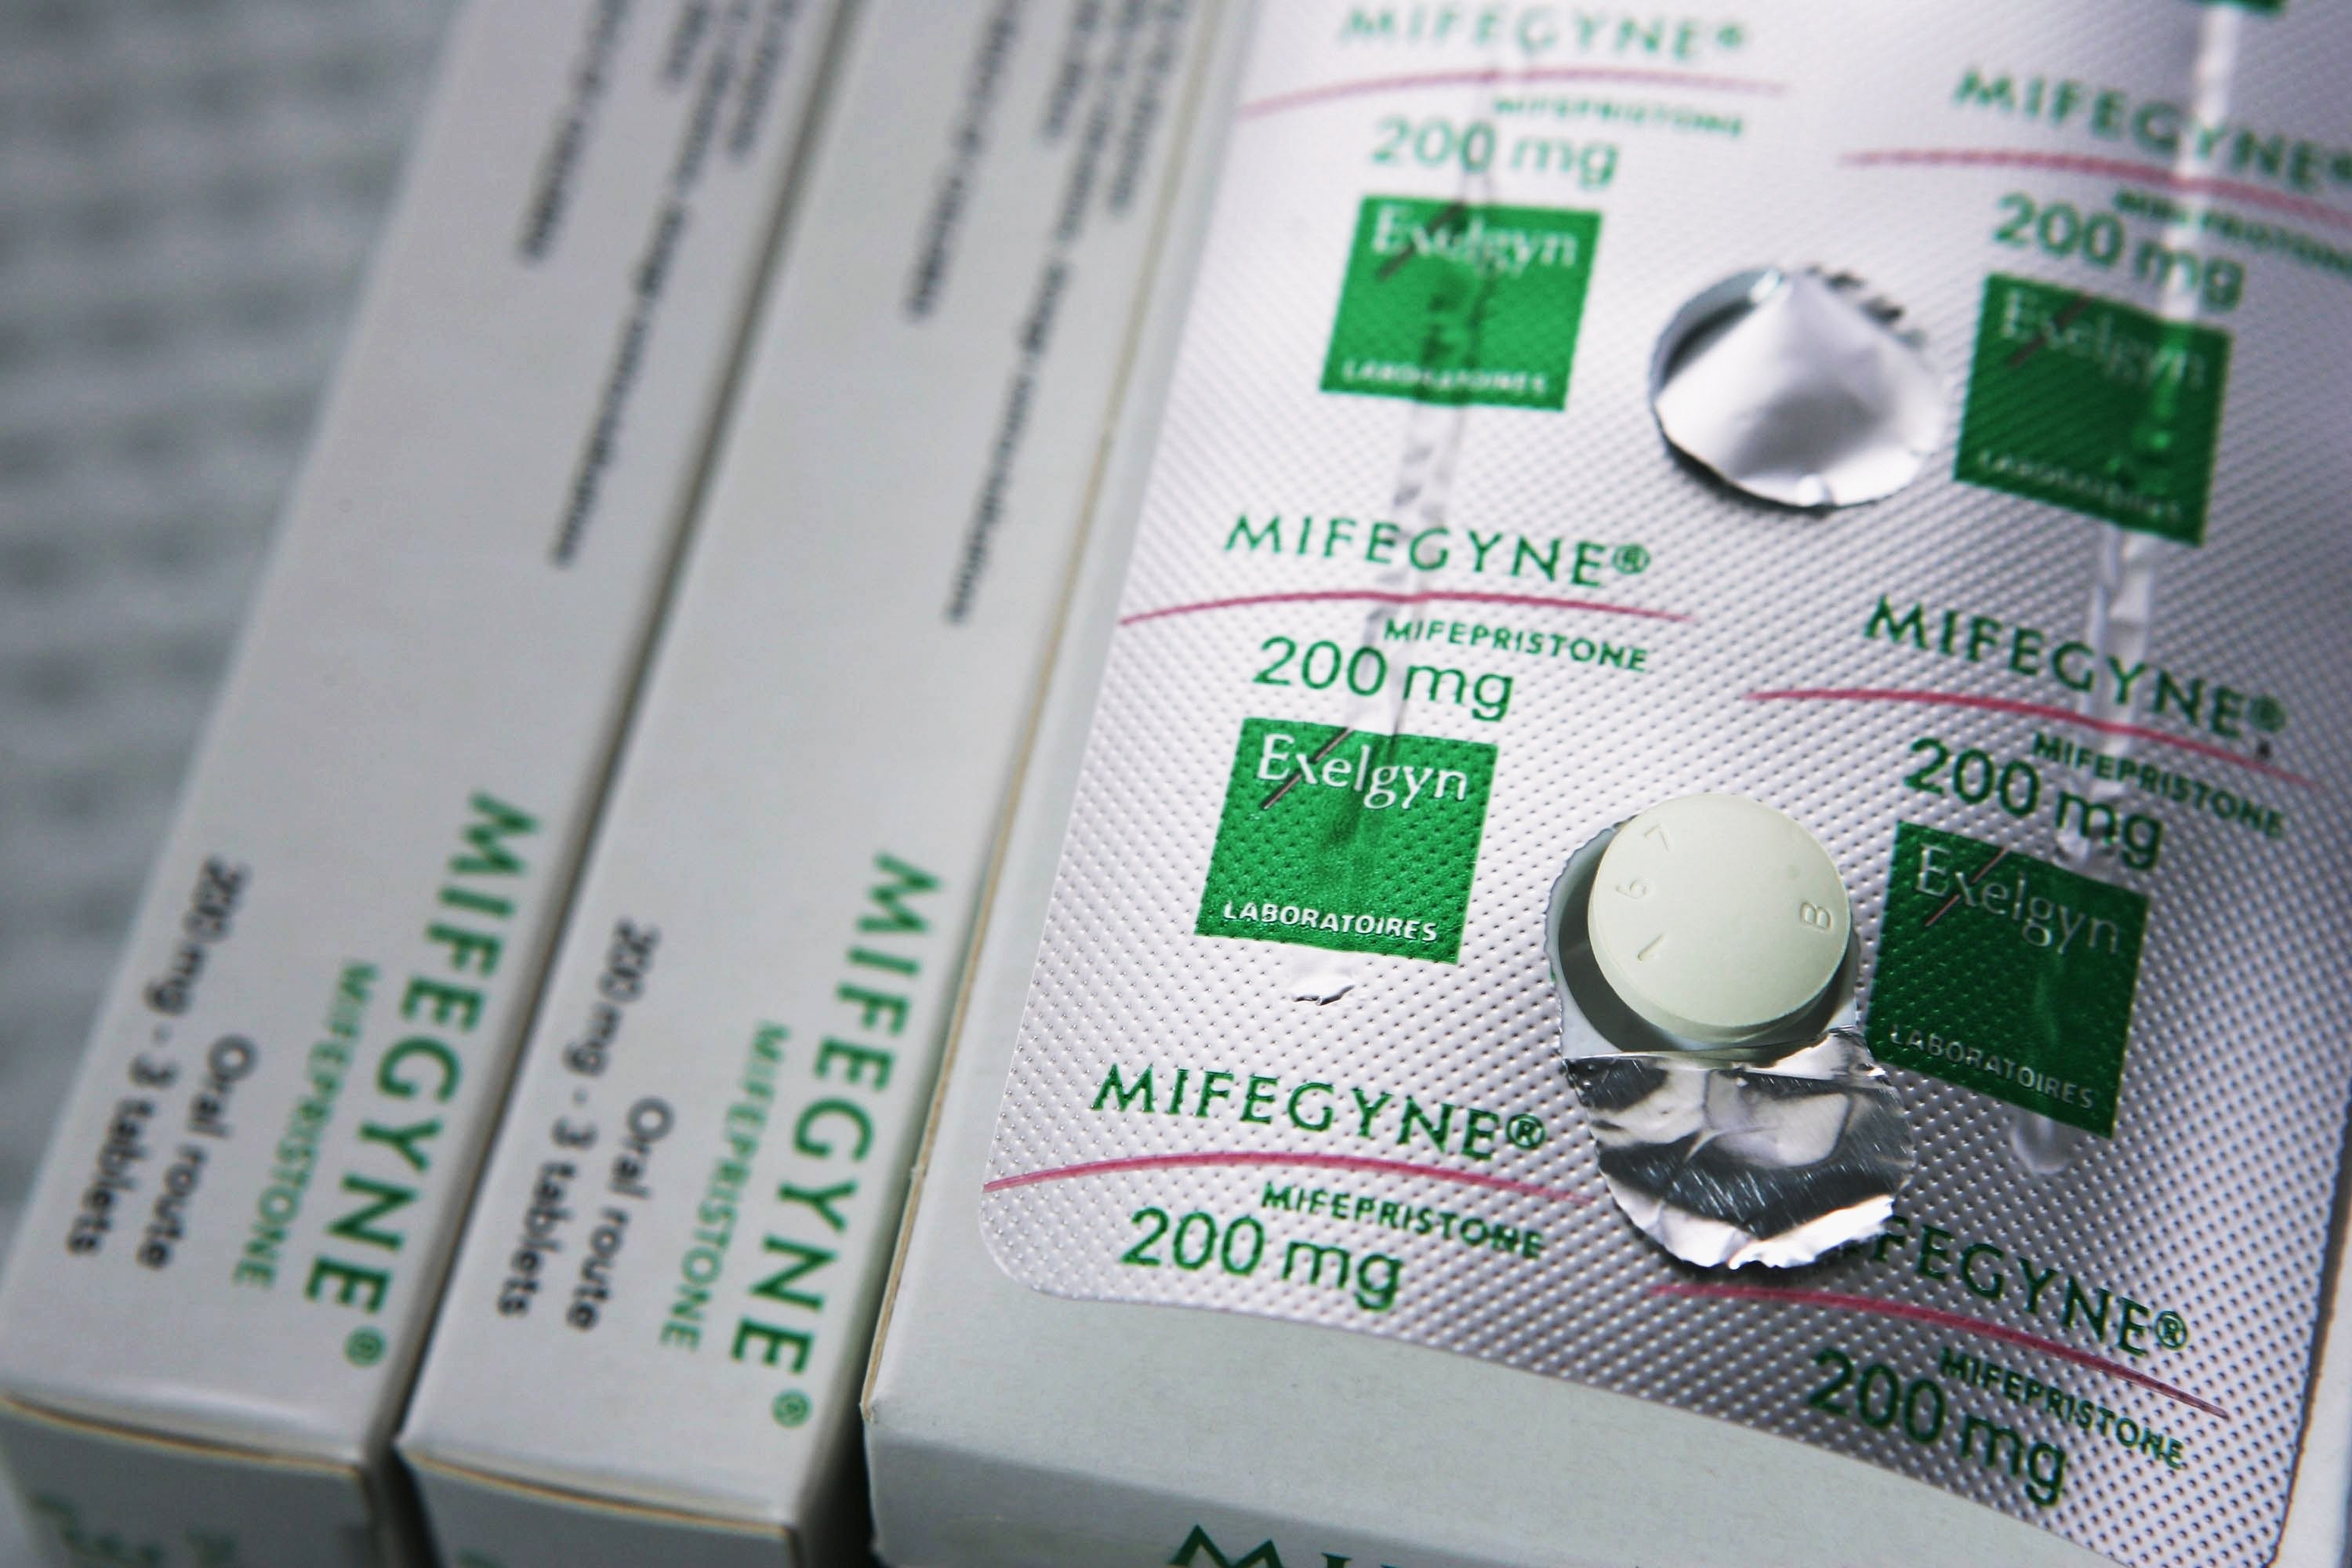 Прерывание беременности стоимость. "Mifepristone" (мифепристон). Мифегин медикаментозное прерывание. Мифегин 200 мг. Таблетки от прерывания беременности Мифегин.